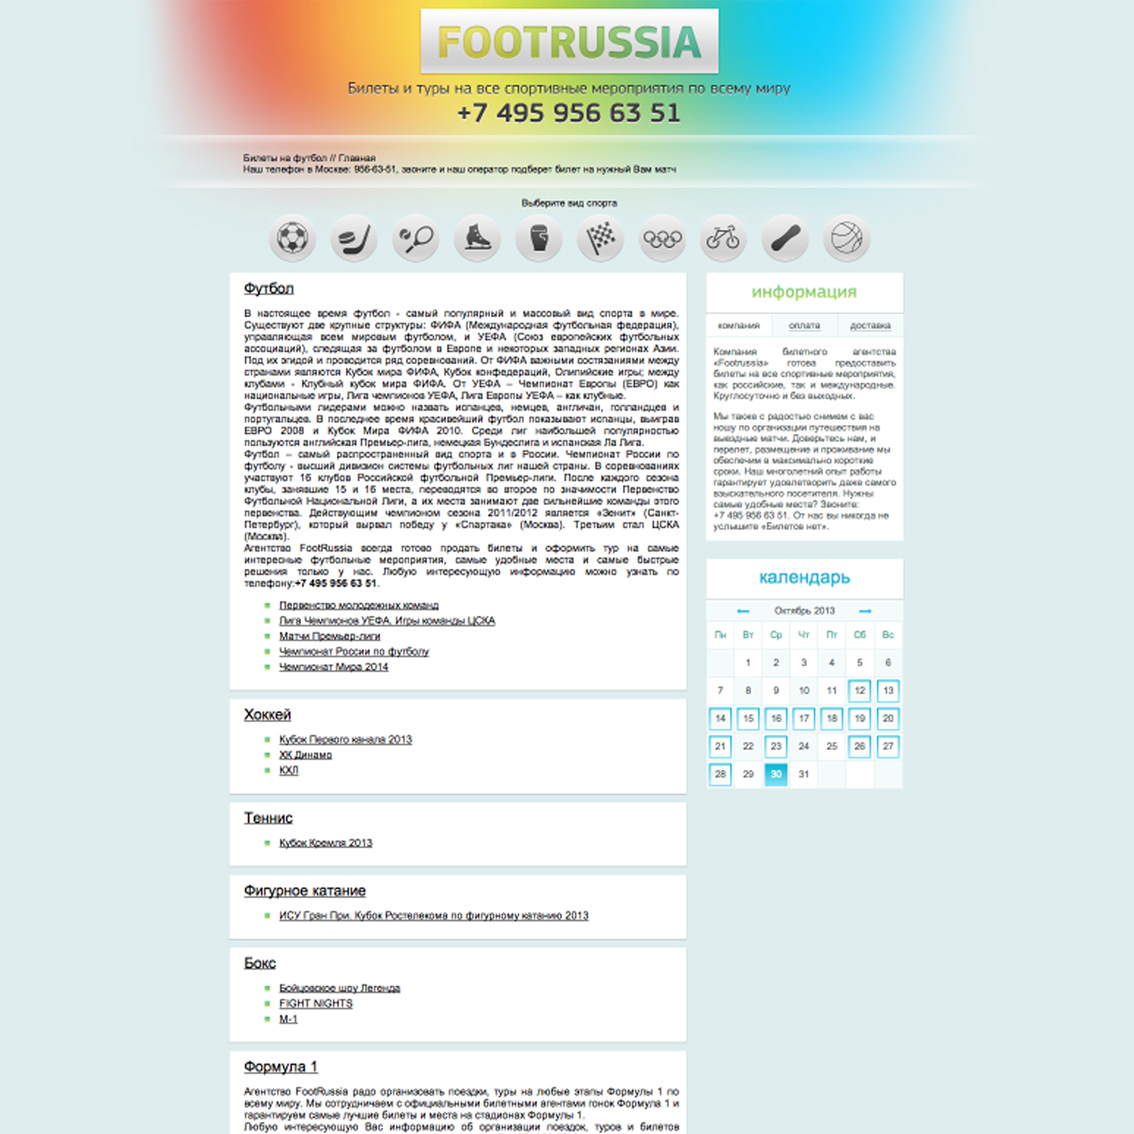 интернет-витрина спортивных мероприятий http://footrussia.ru 